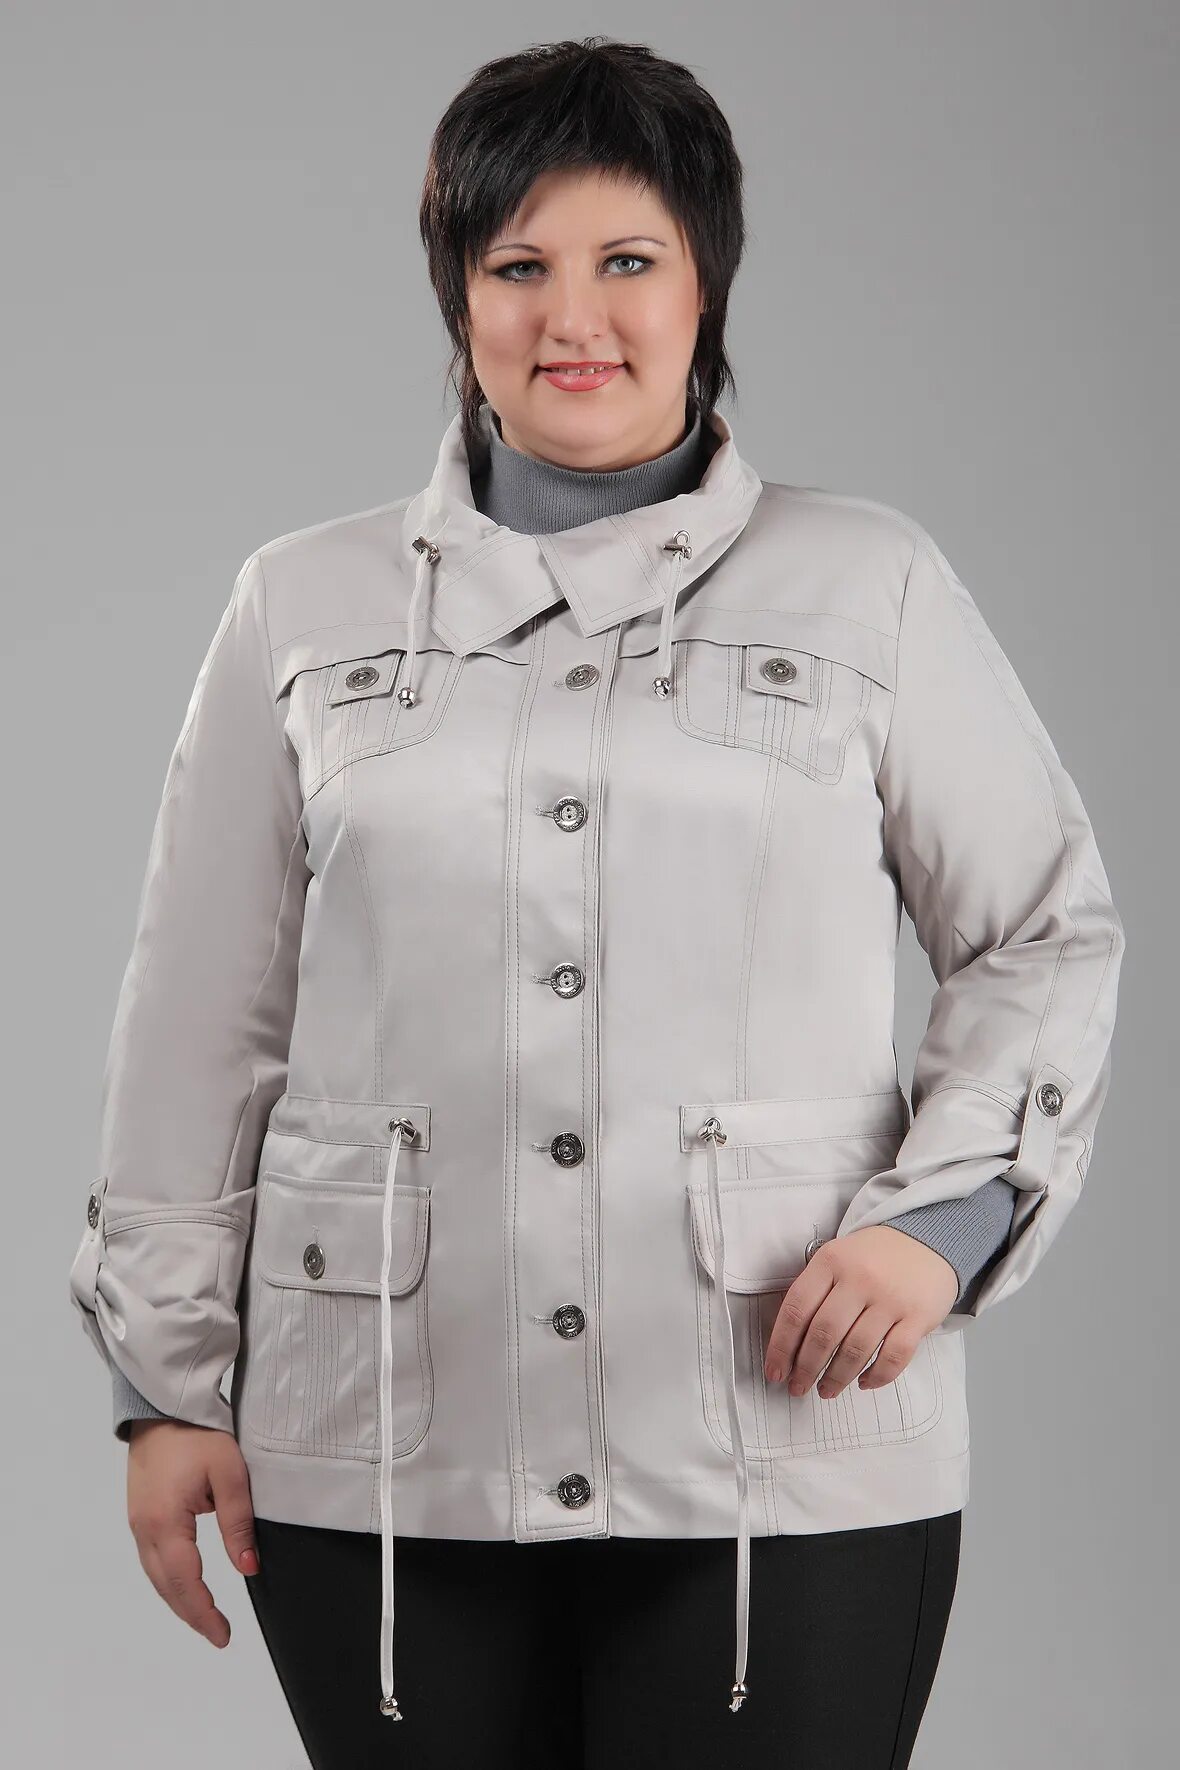 Куртка демисезонная женская 54 размер Баттерфляй. Валберис куртки размер 68-70 женские демисезонные. Куртки для пожилых женщин.